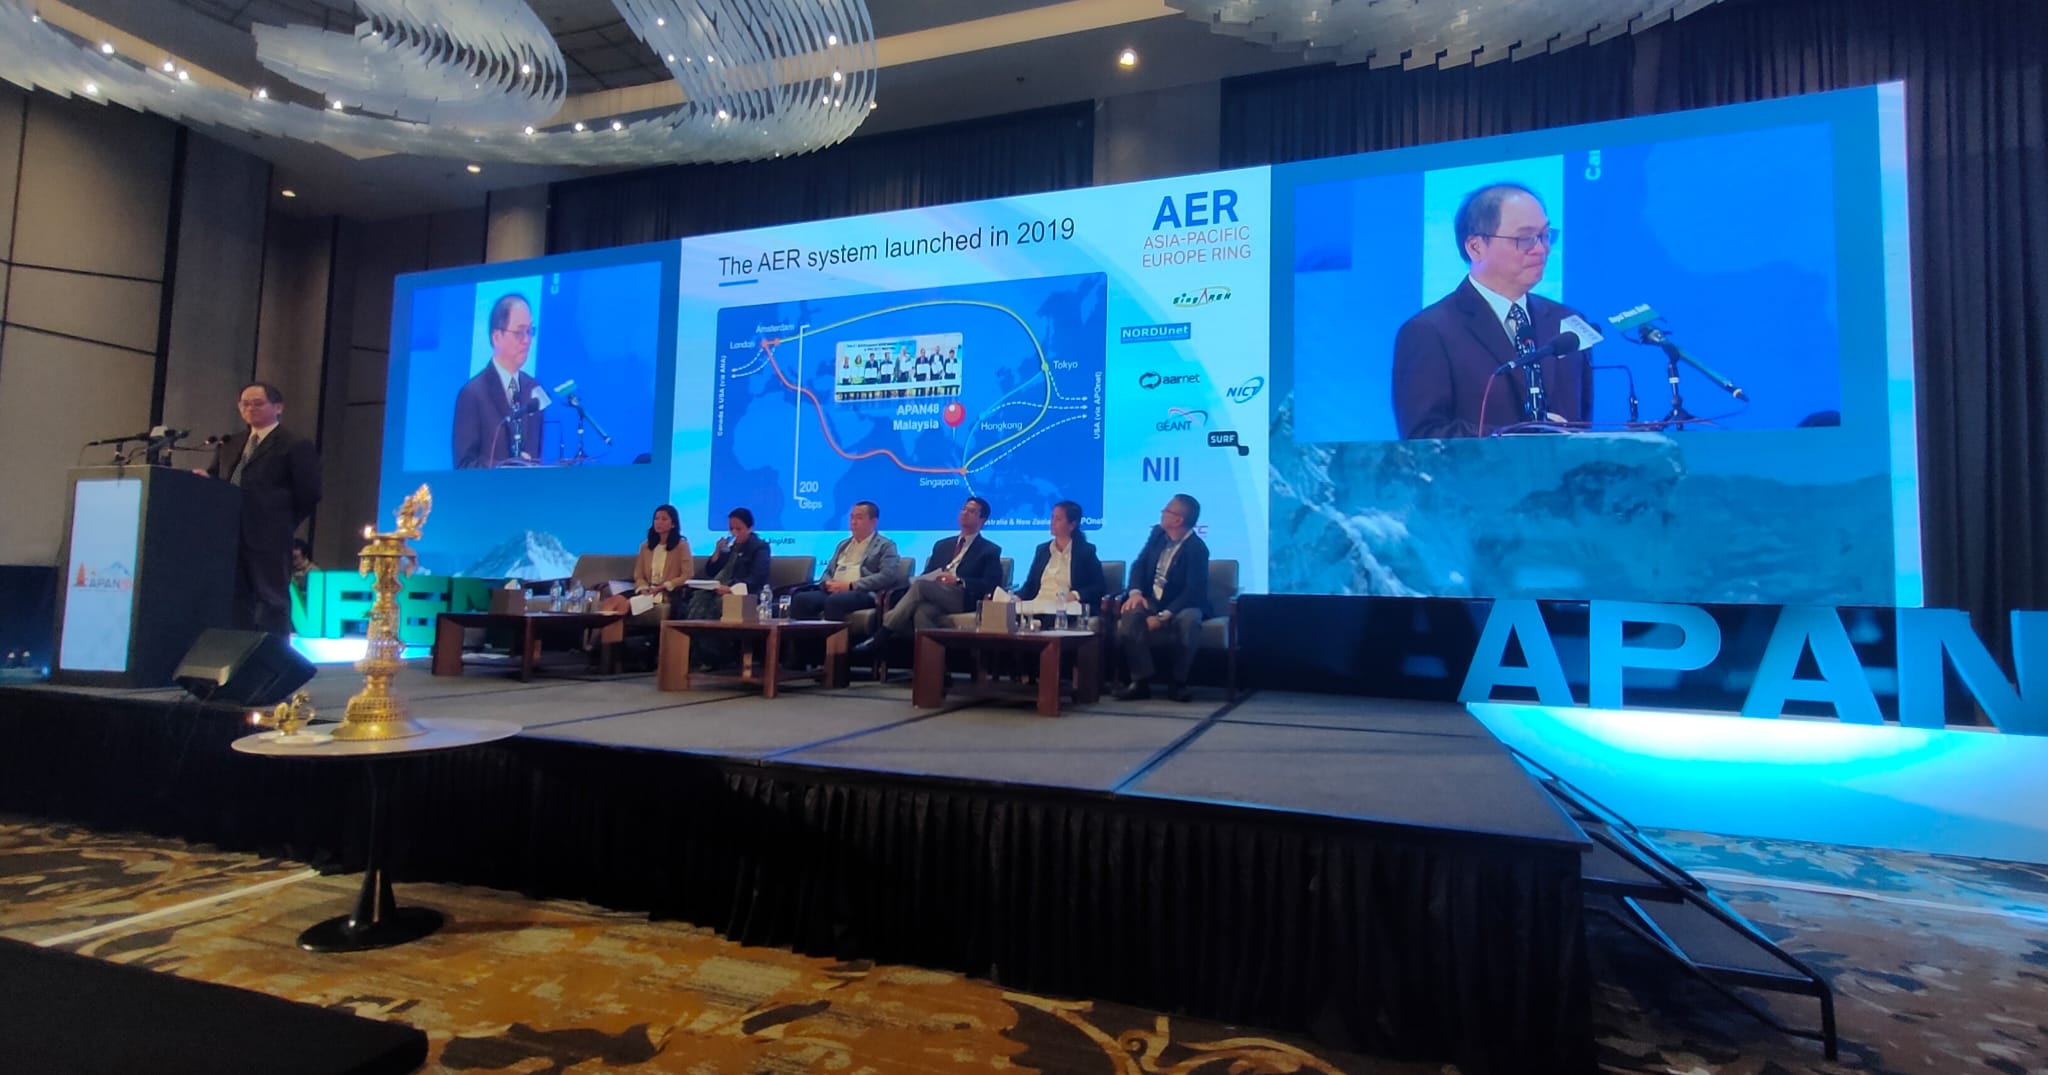 Speech by Professor Lee Bu Sung, Chair of AER Steering Committee